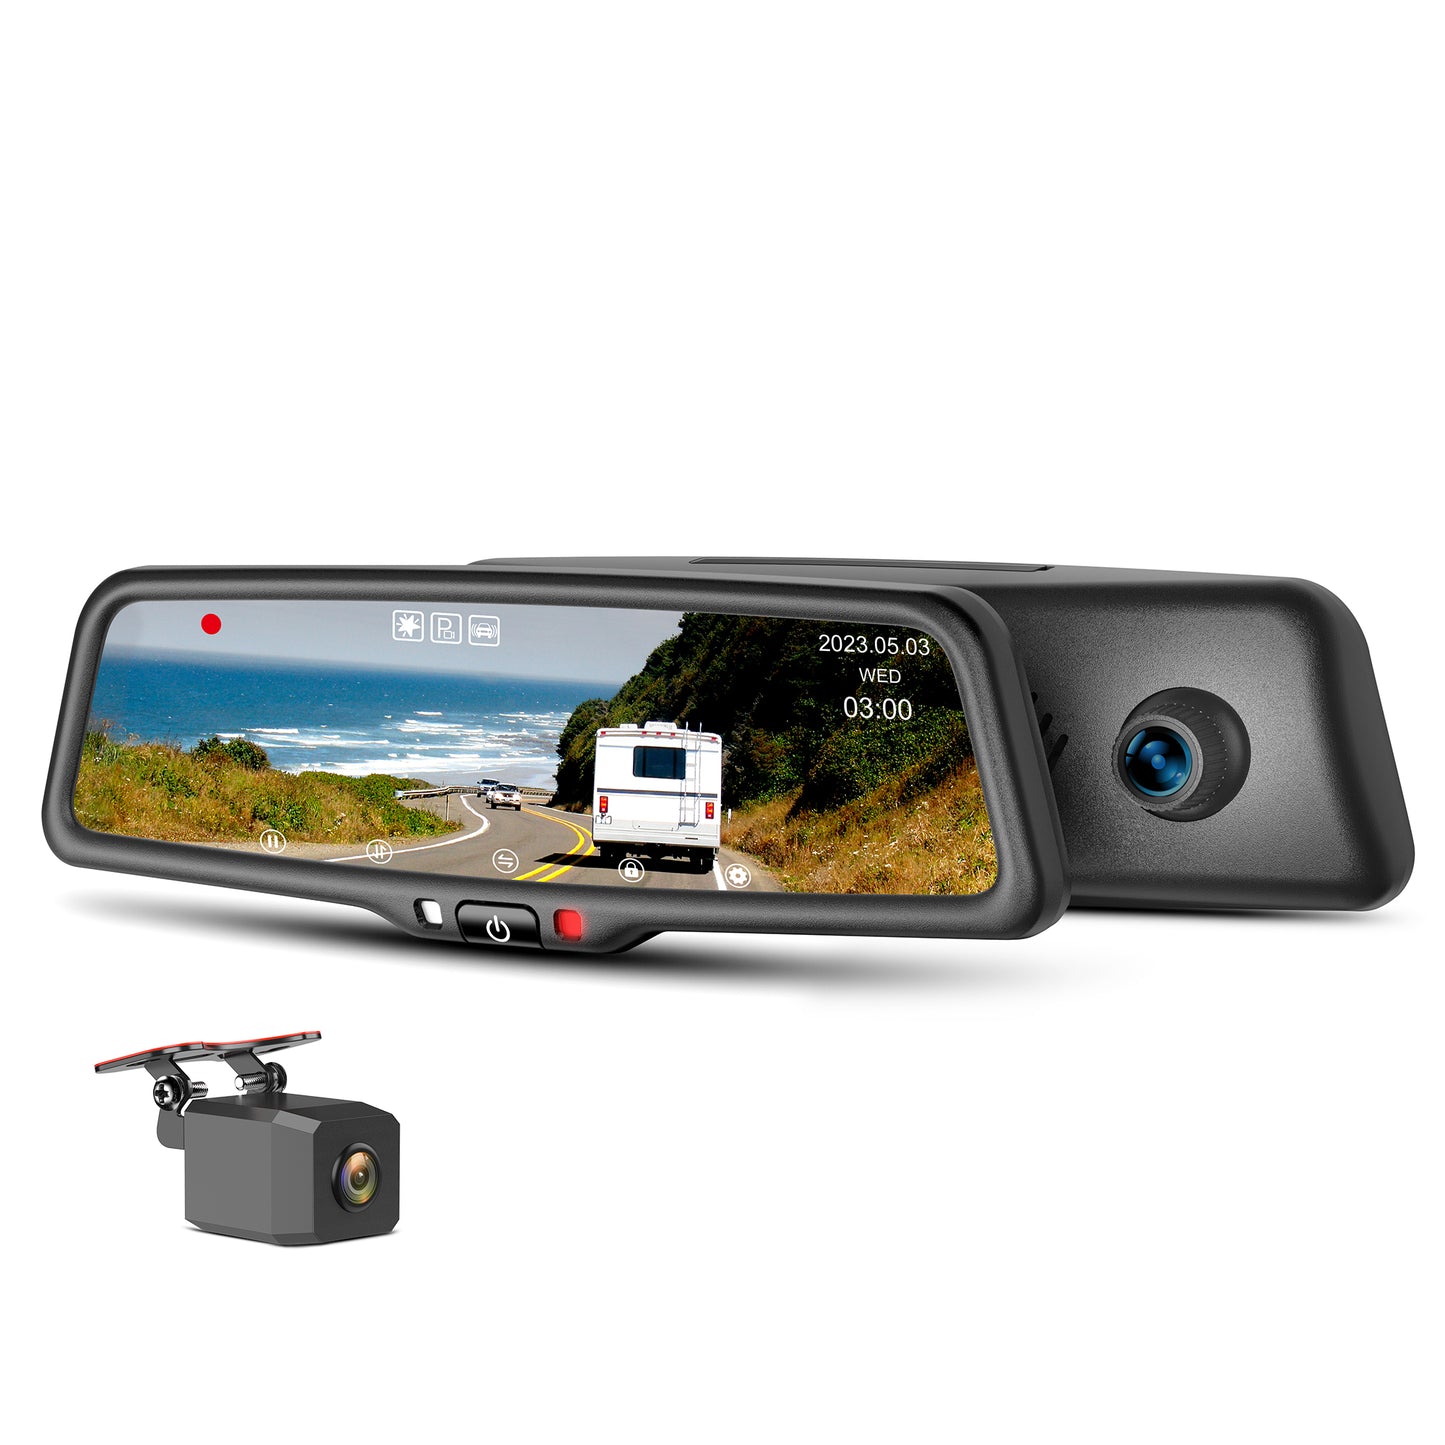 iMirror YV-096 OEM Quality Rear View Mirror Dash Camera